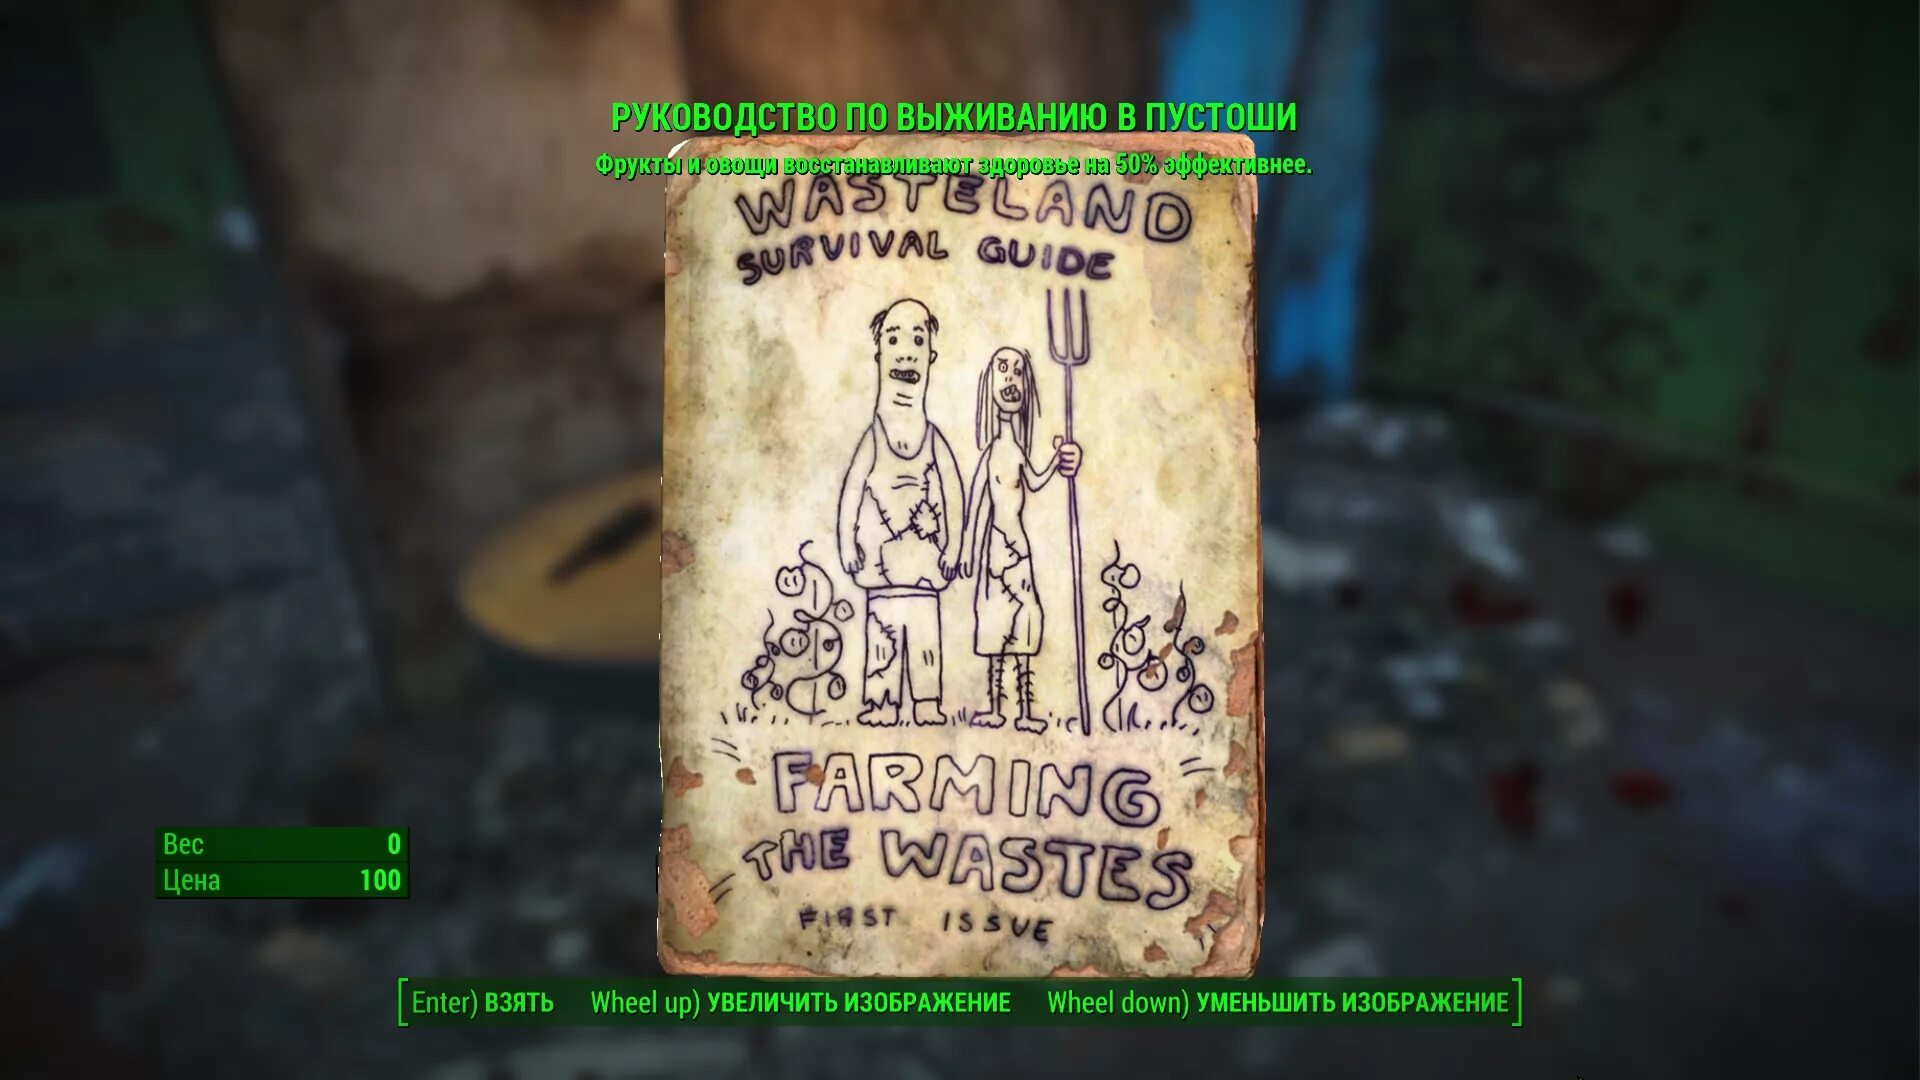 Сай медорфенов пустоши. Fallout руководство по выживанию. Wasteland Survival Guide.